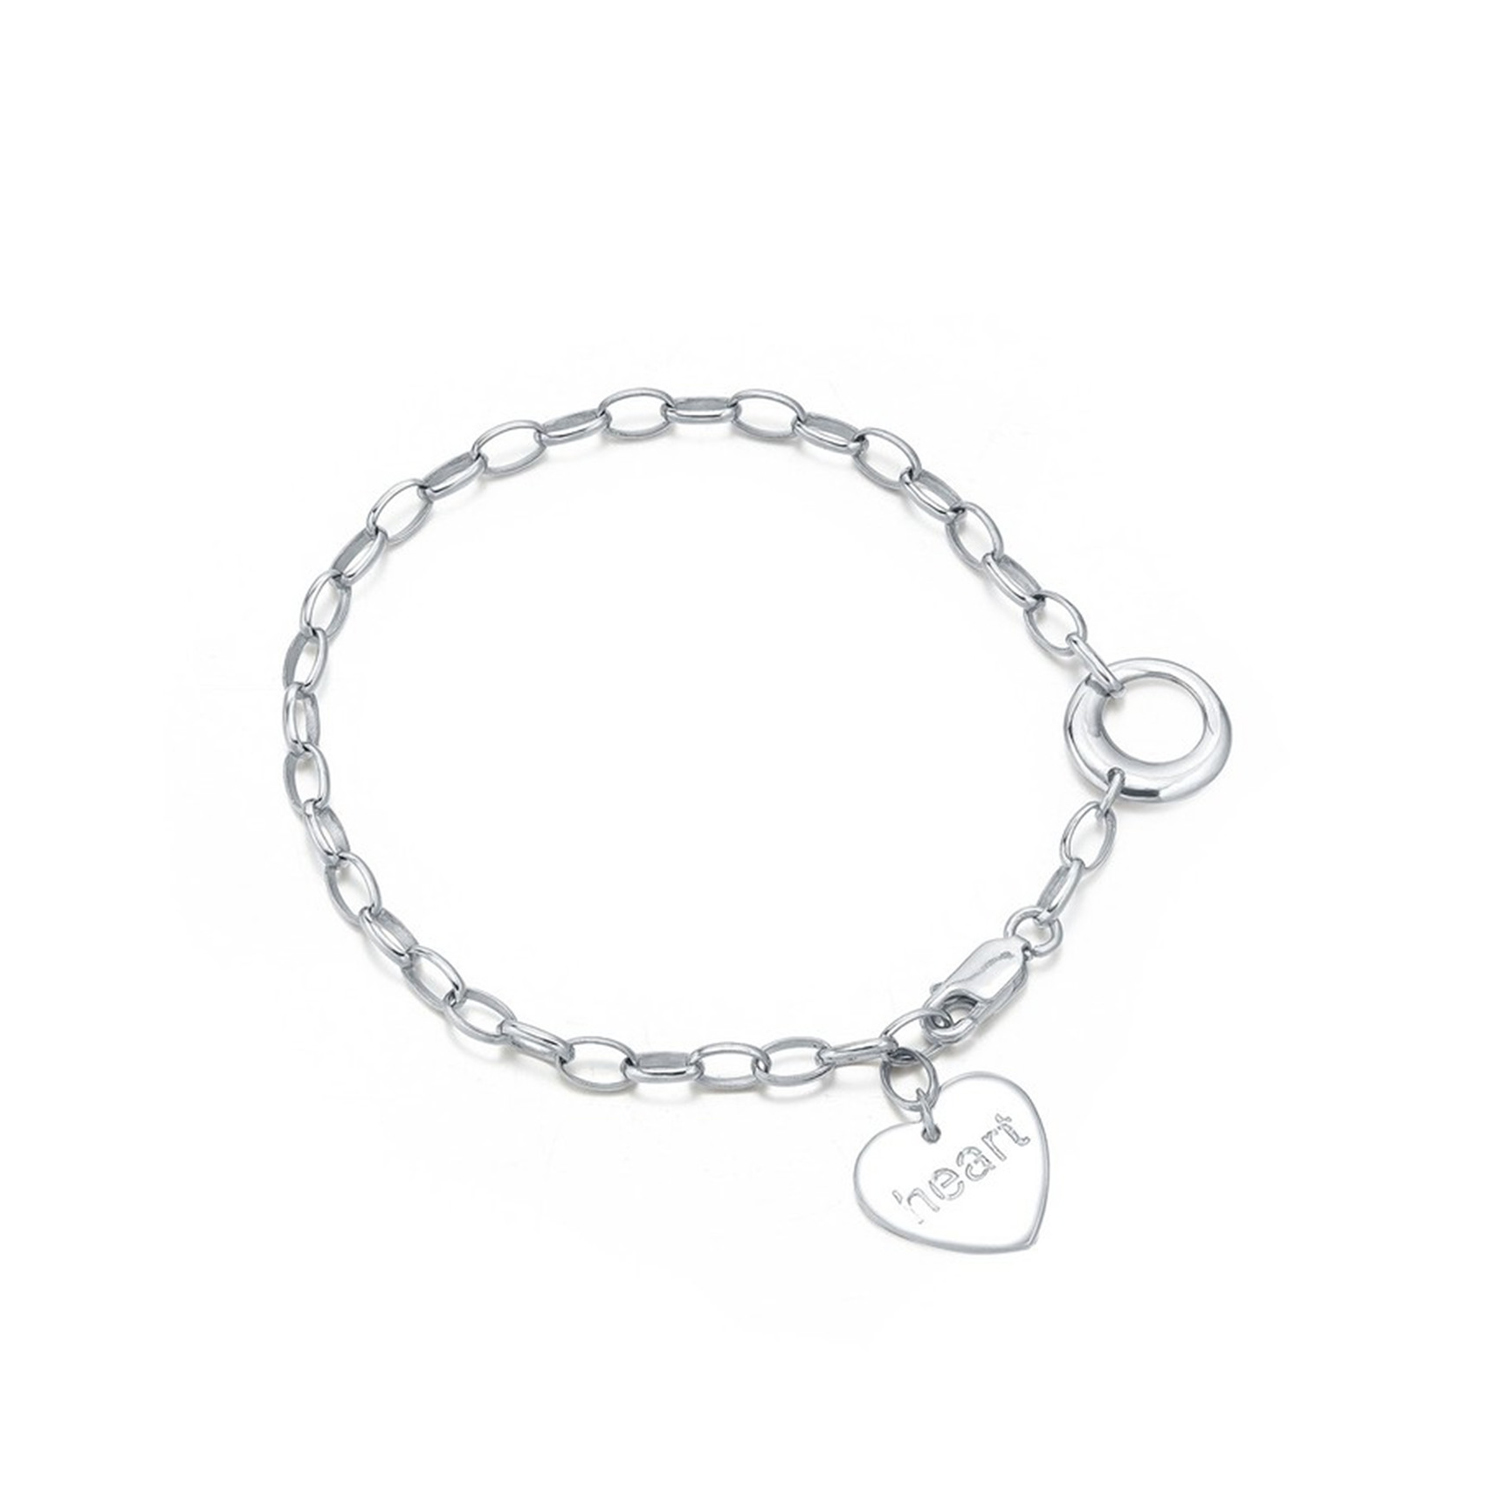 Personalzied women jewelry heart pendant S925 sterling silver bracelet bangles chain bracelets